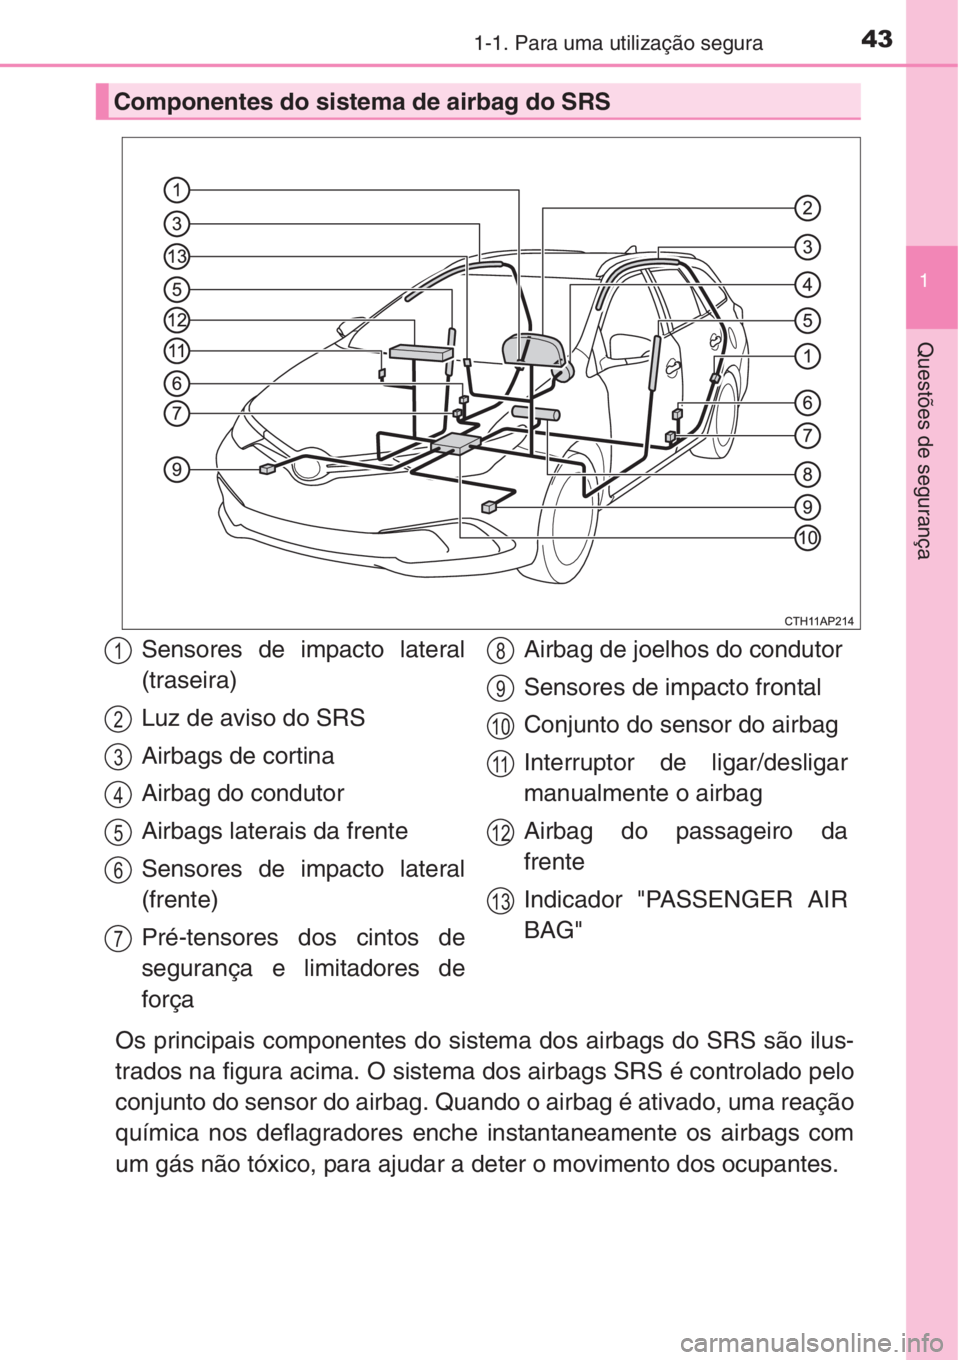 TOYOTA AURIS 2016  Manual de utilização (in Portuguese) 431-1. Para uma utilização segura
1
Questões de segurança
Os principais componentes do sistema dos airbags do SRS são ilus-
trados na figura acima. O sistema dos airbags SRS é controlado pelo
co